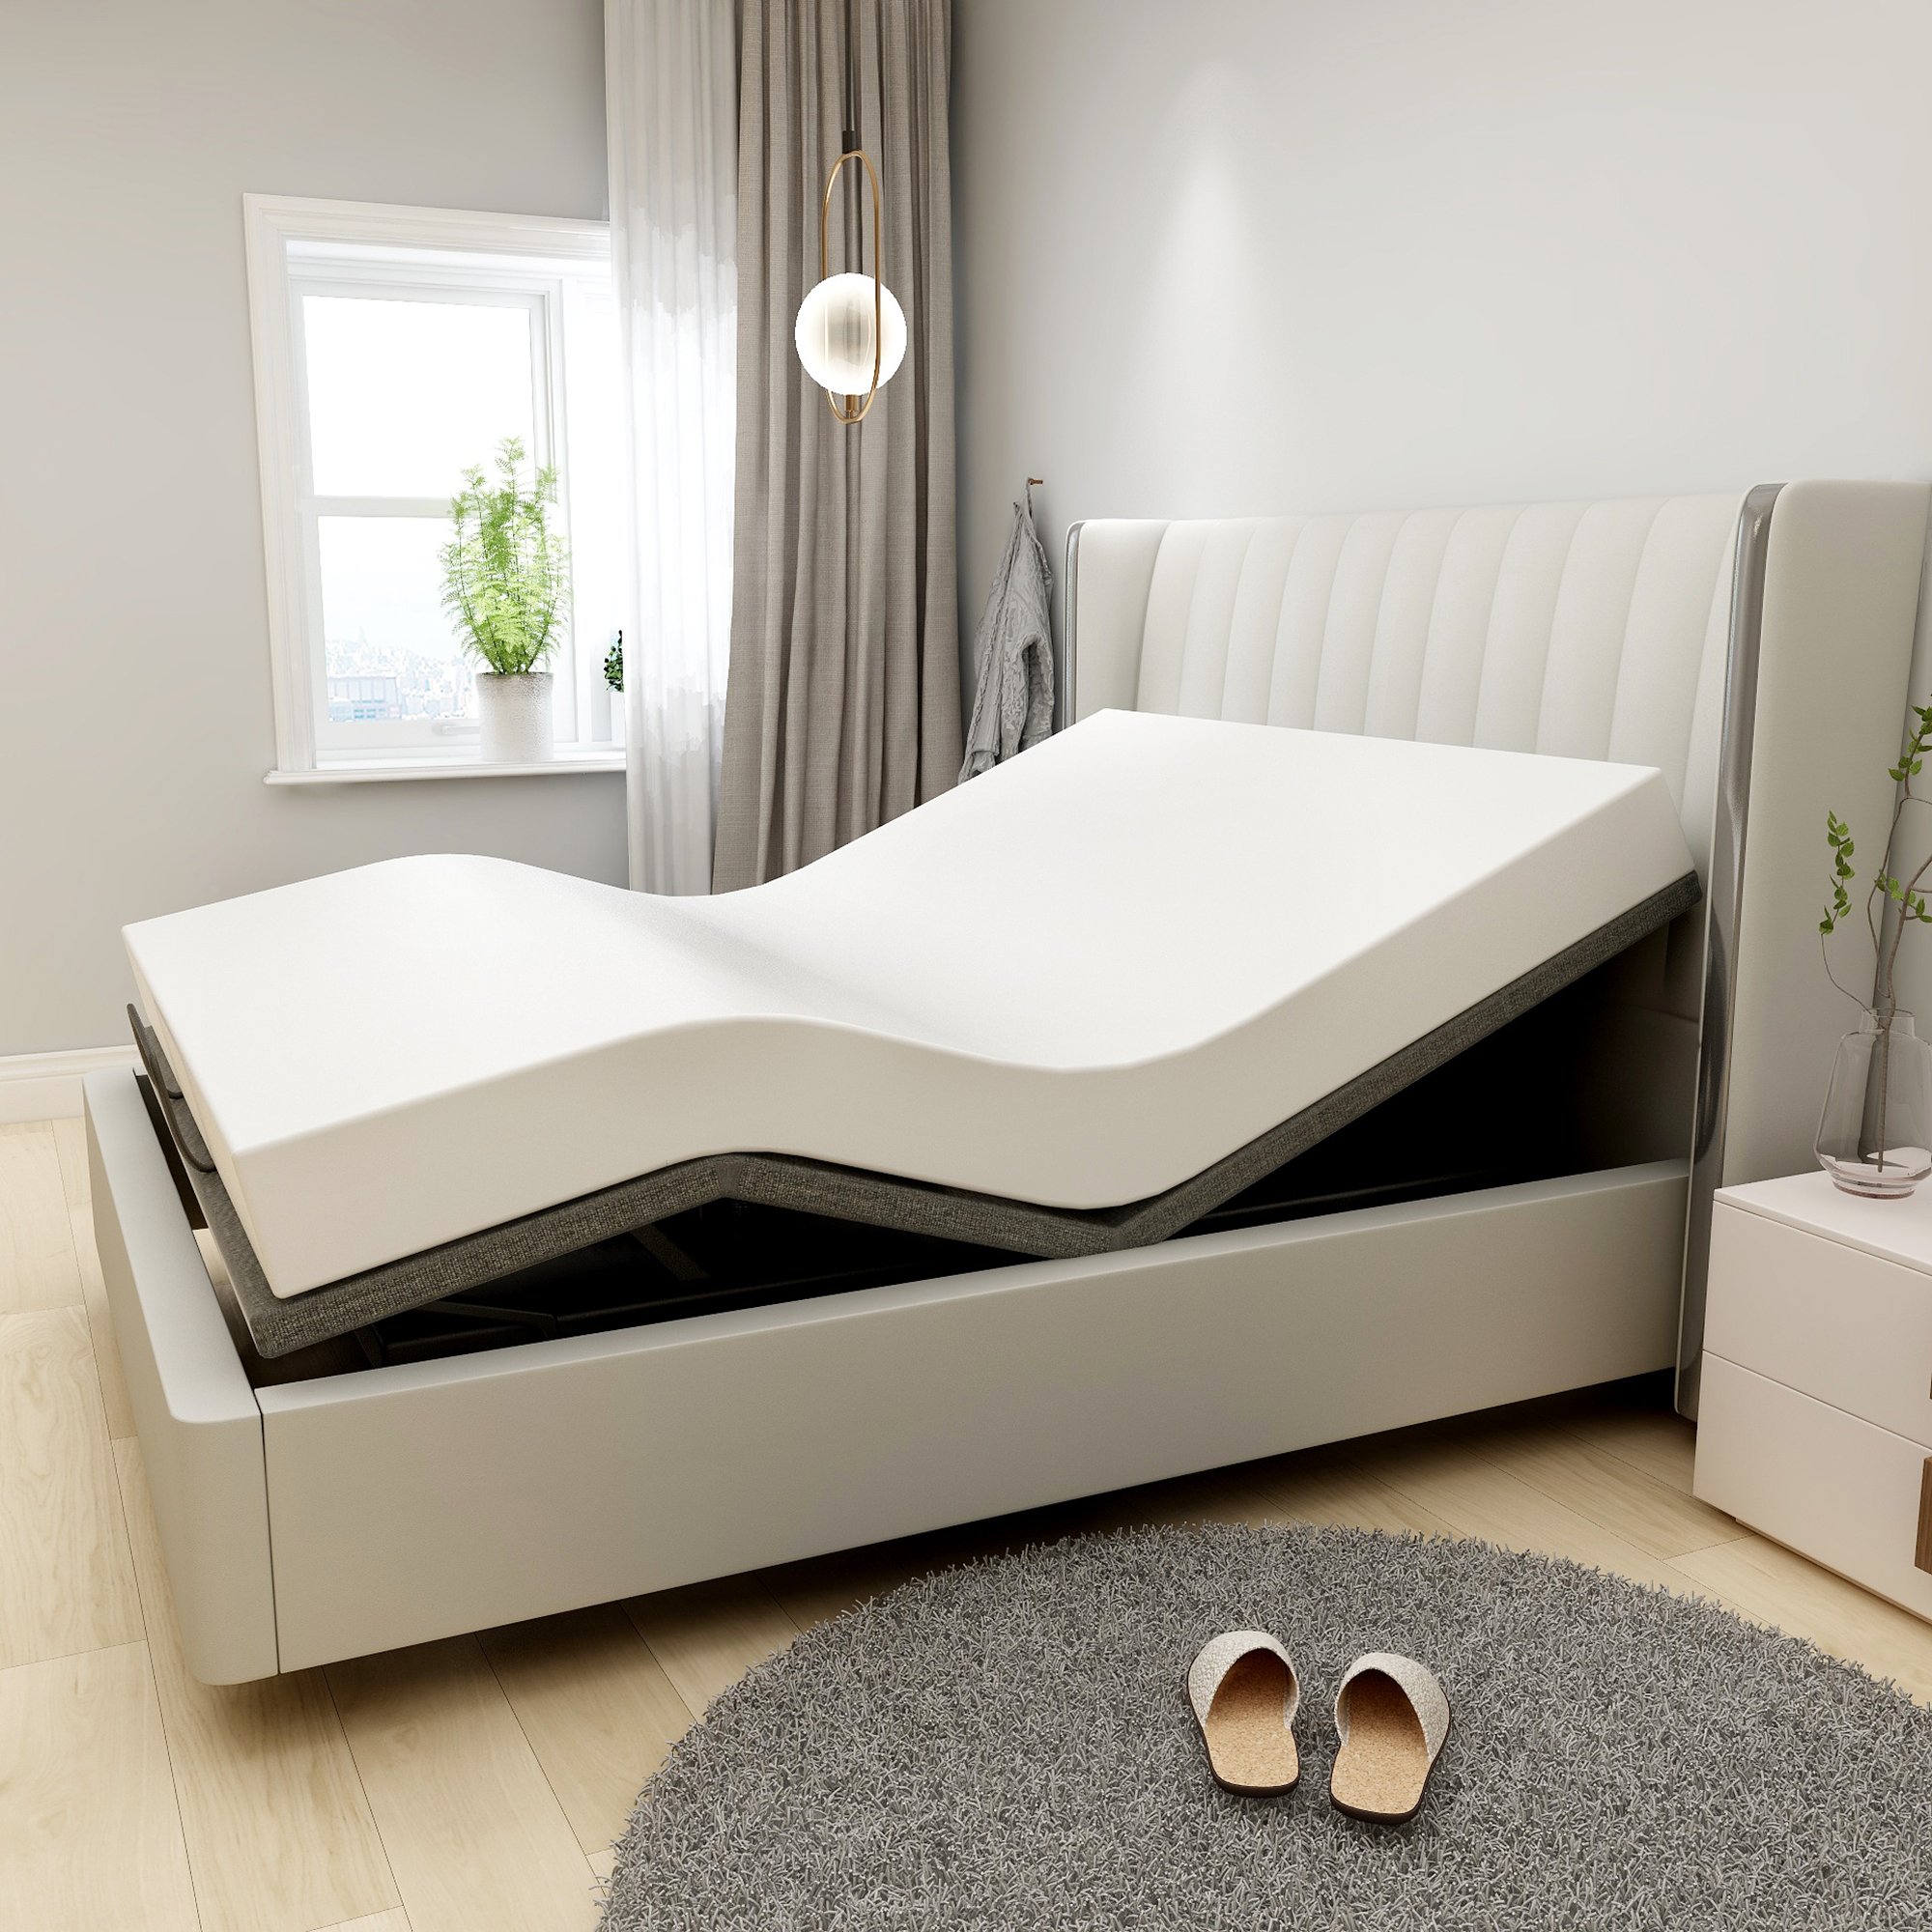 SMIAOER Adjustable Bed Base Frame Smart Electric Beds ...